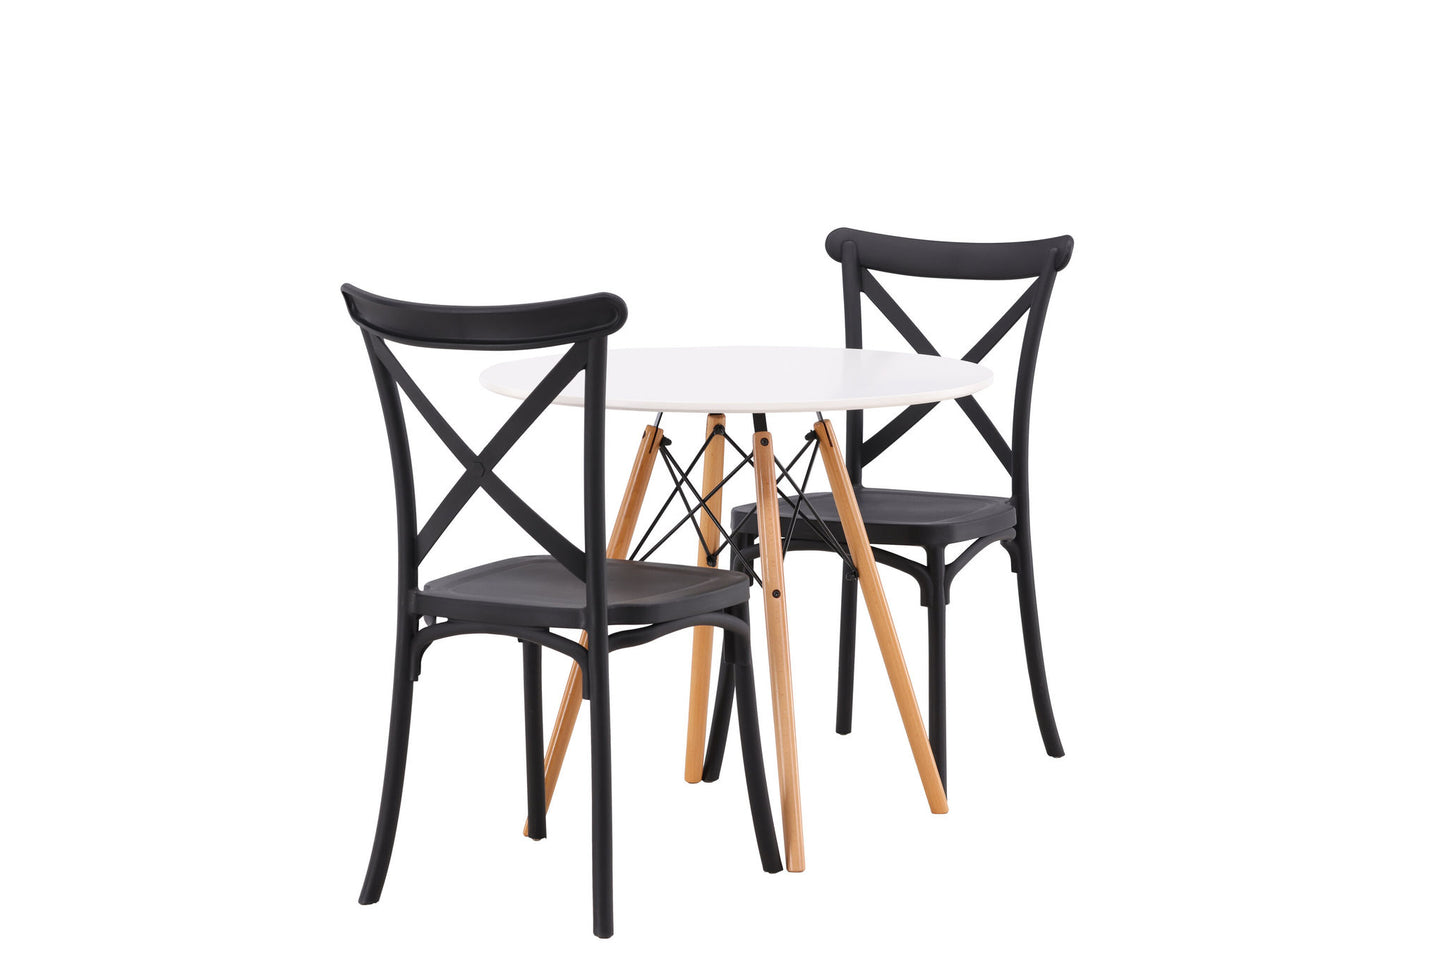 Danburi - Spisebord, Trælook / Trælook MDF +Crosett Spisebordsstol - Matsort / Matsort Plast